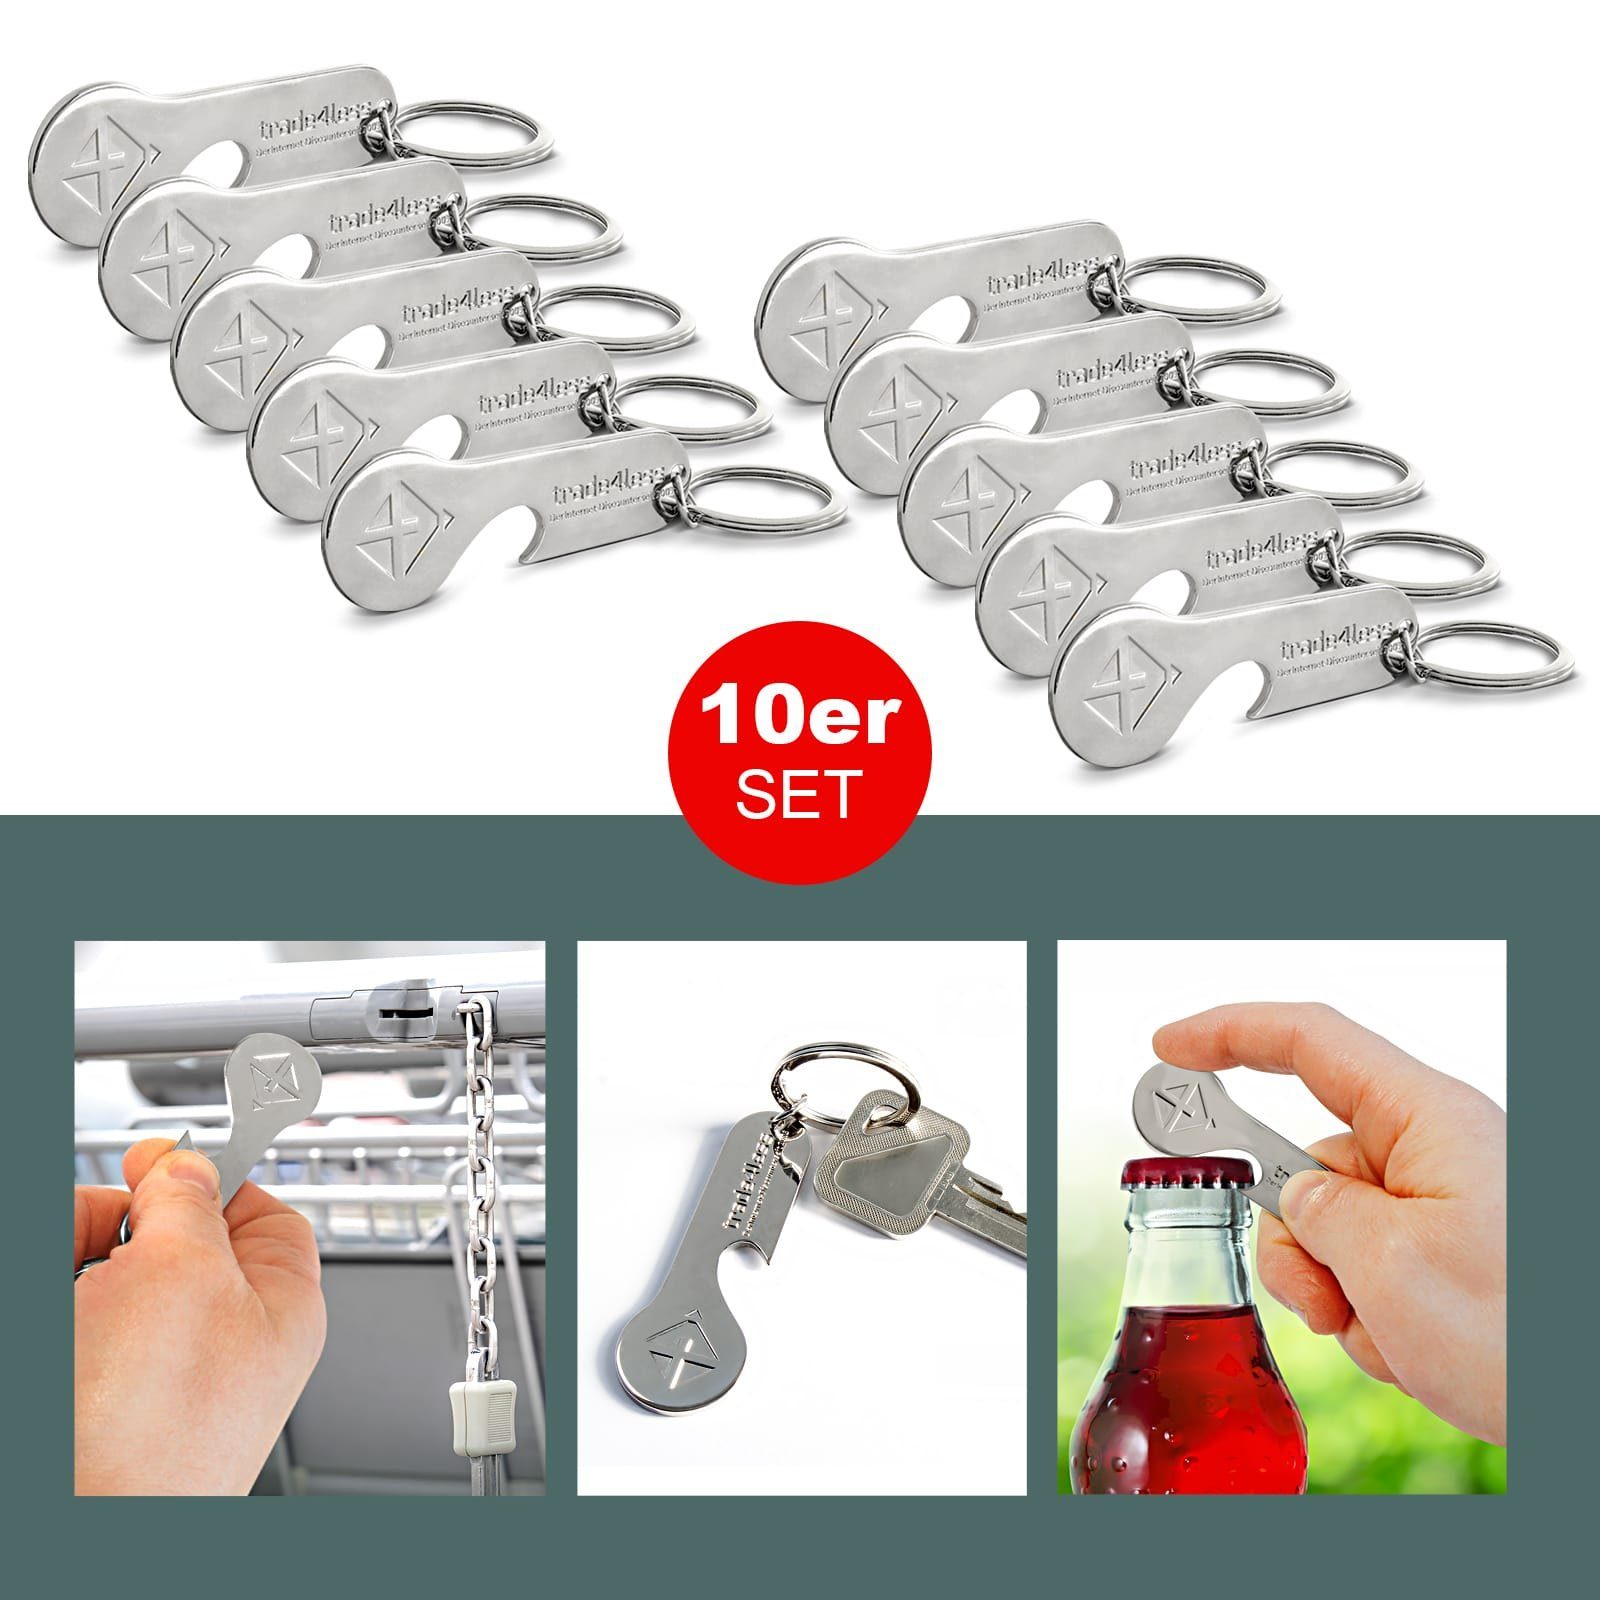 EAXUS Schlüsselanhänger 2in1 Einkaufswagenlöser mit Flaschenöffner aus Edelstahl (10-tlg), Rostfreier Einkaufswagenchip - Einkaufschip